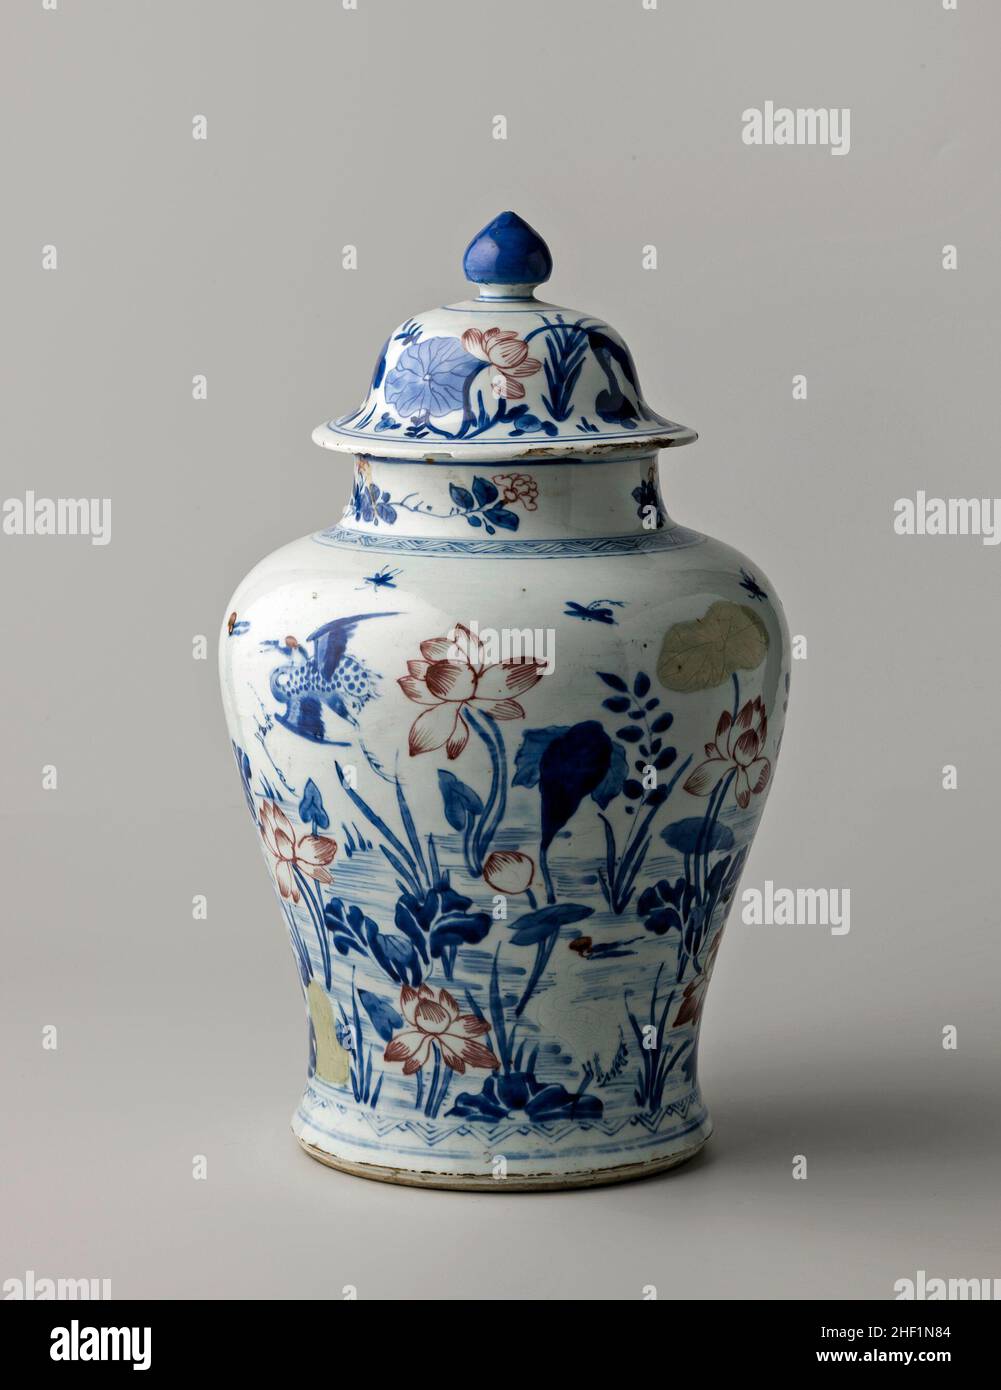 Balustre vaso coperto con piante di loto e gru, anonimo, c.. 1700 - c. 1724 Foto Stock